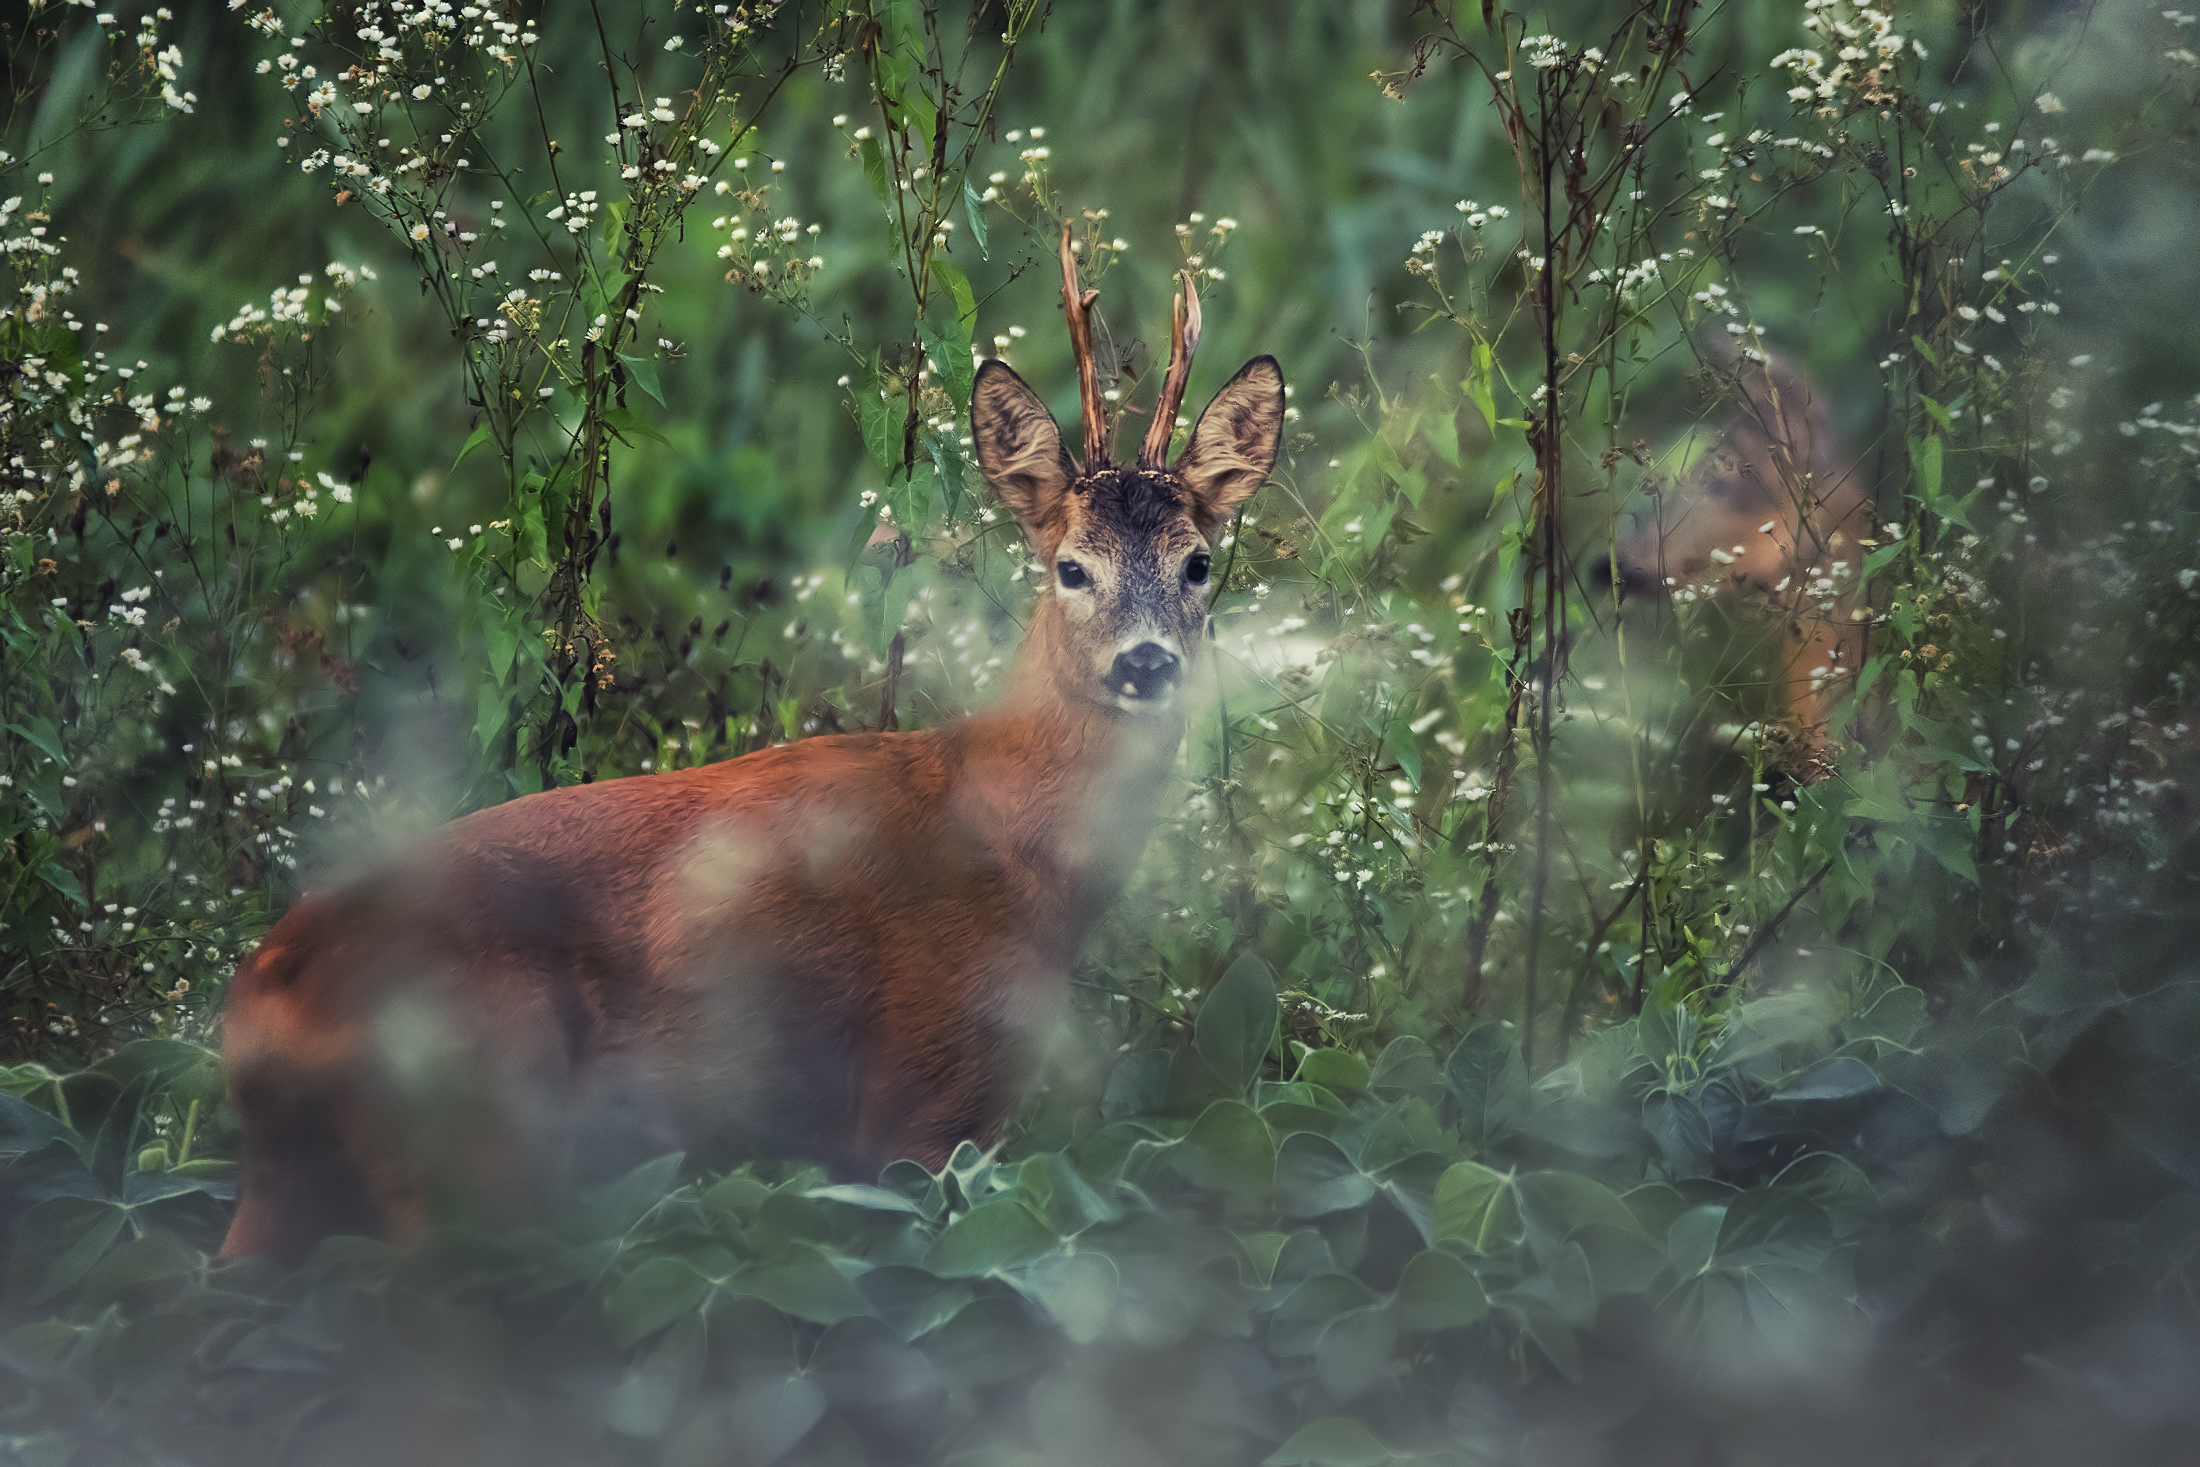 Roe deer (male and female)...